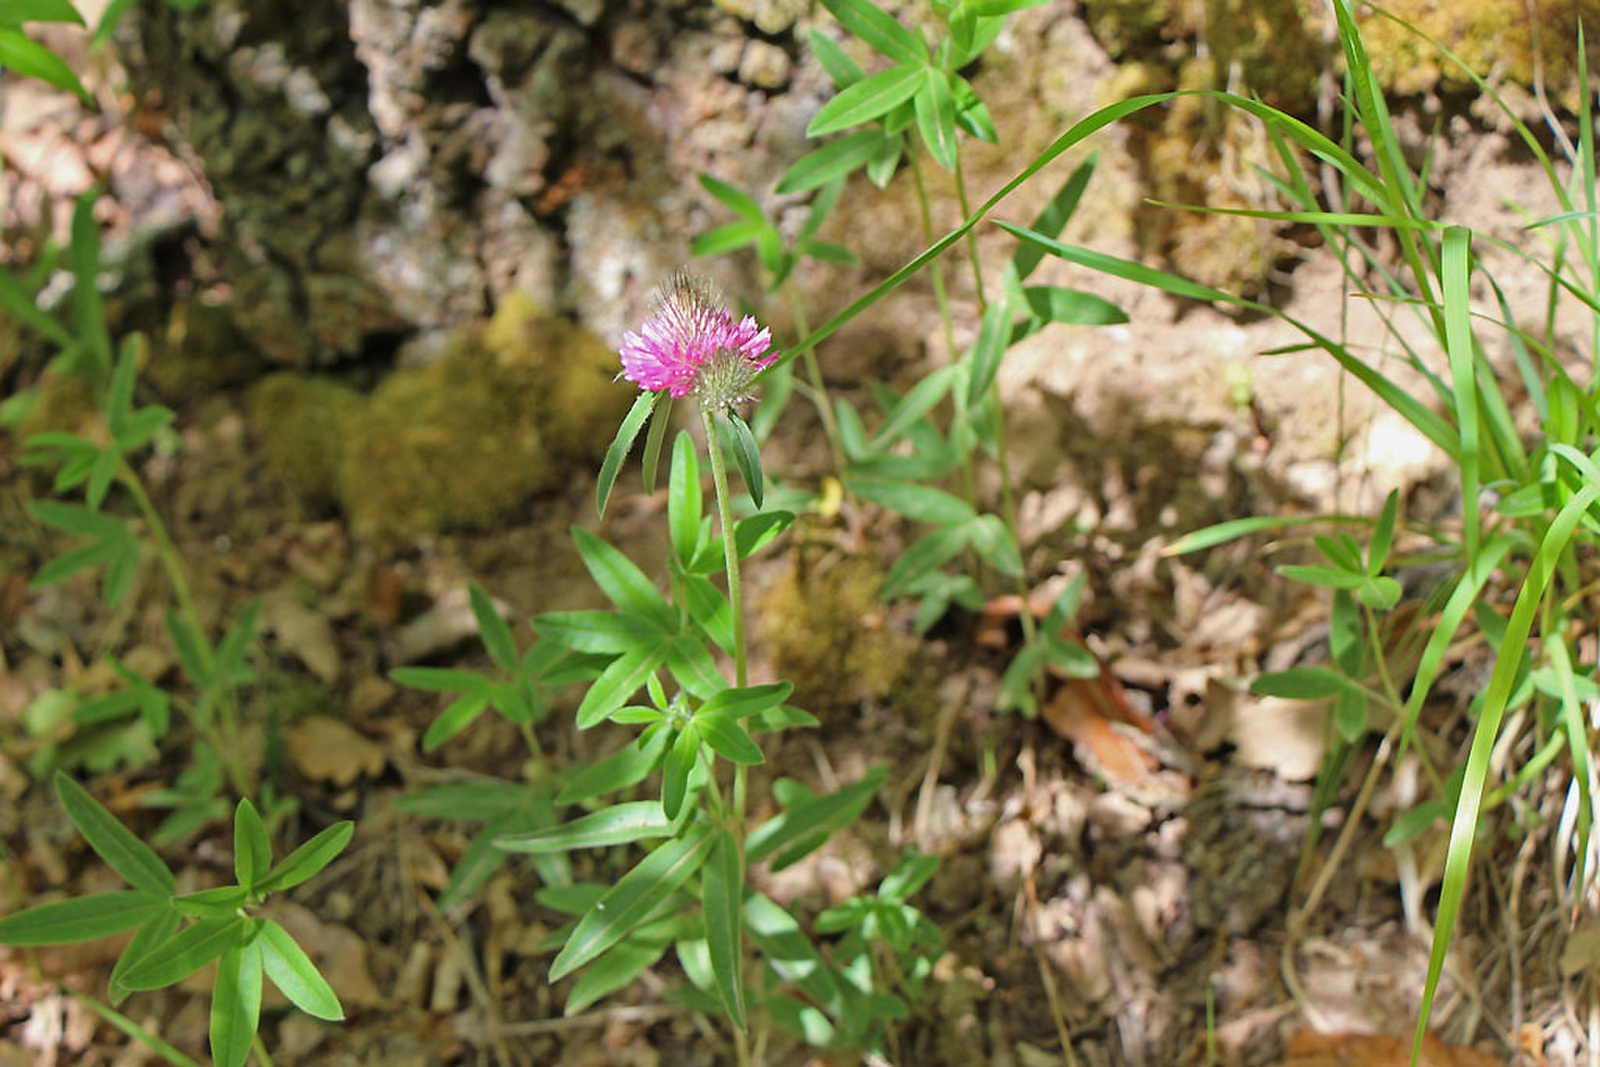 Trifolium rubens - pirosló here